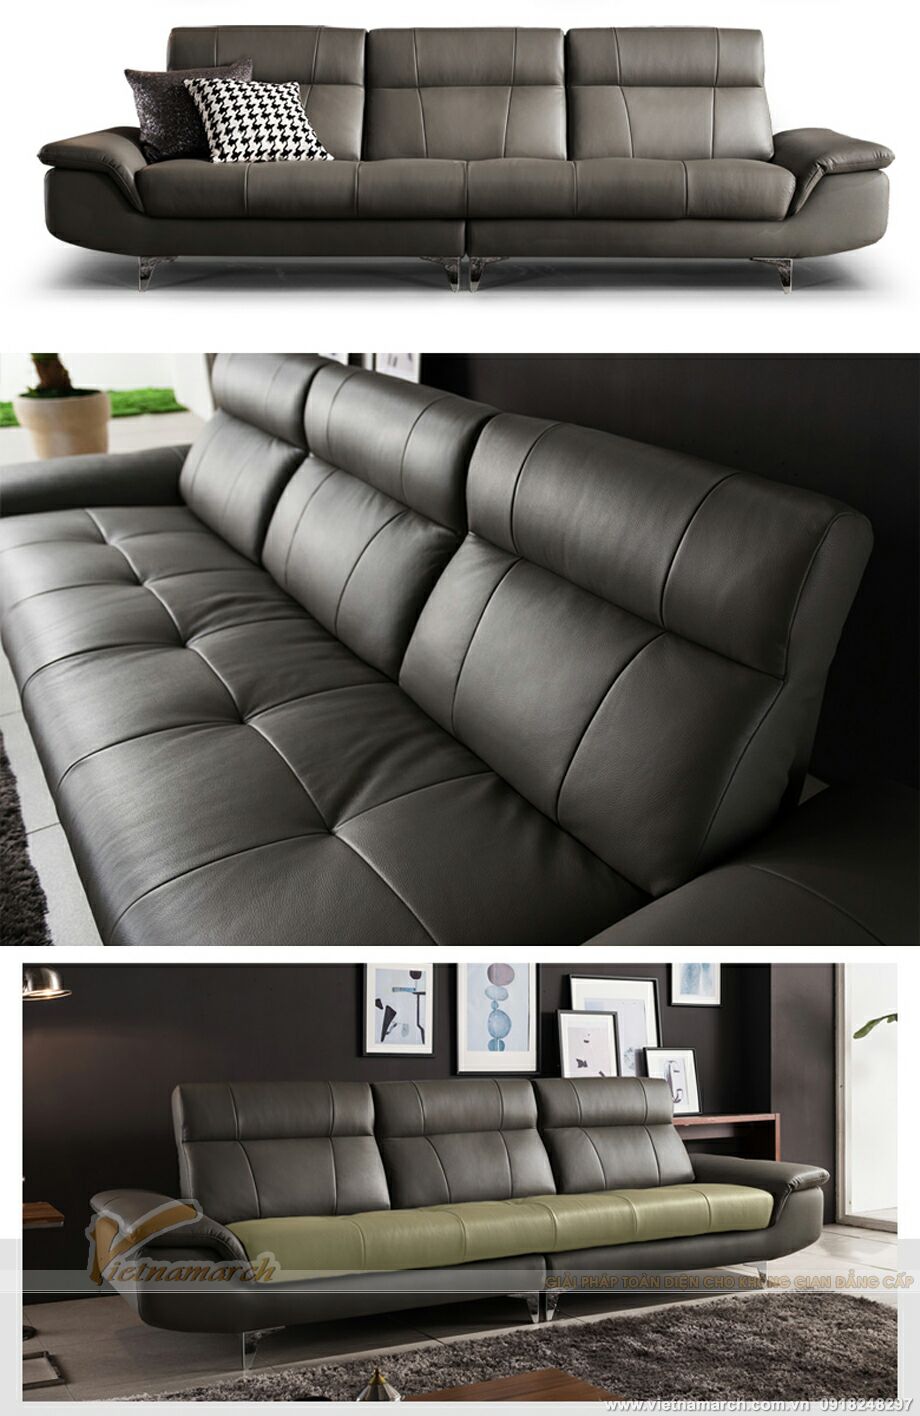 Mẫu ghế sofa văng chất liệu da nhập khẩu Italia cao cấp – Mã: SDV-001 > Cách phối hợp mầu sắc đa dạng, hài hòa.